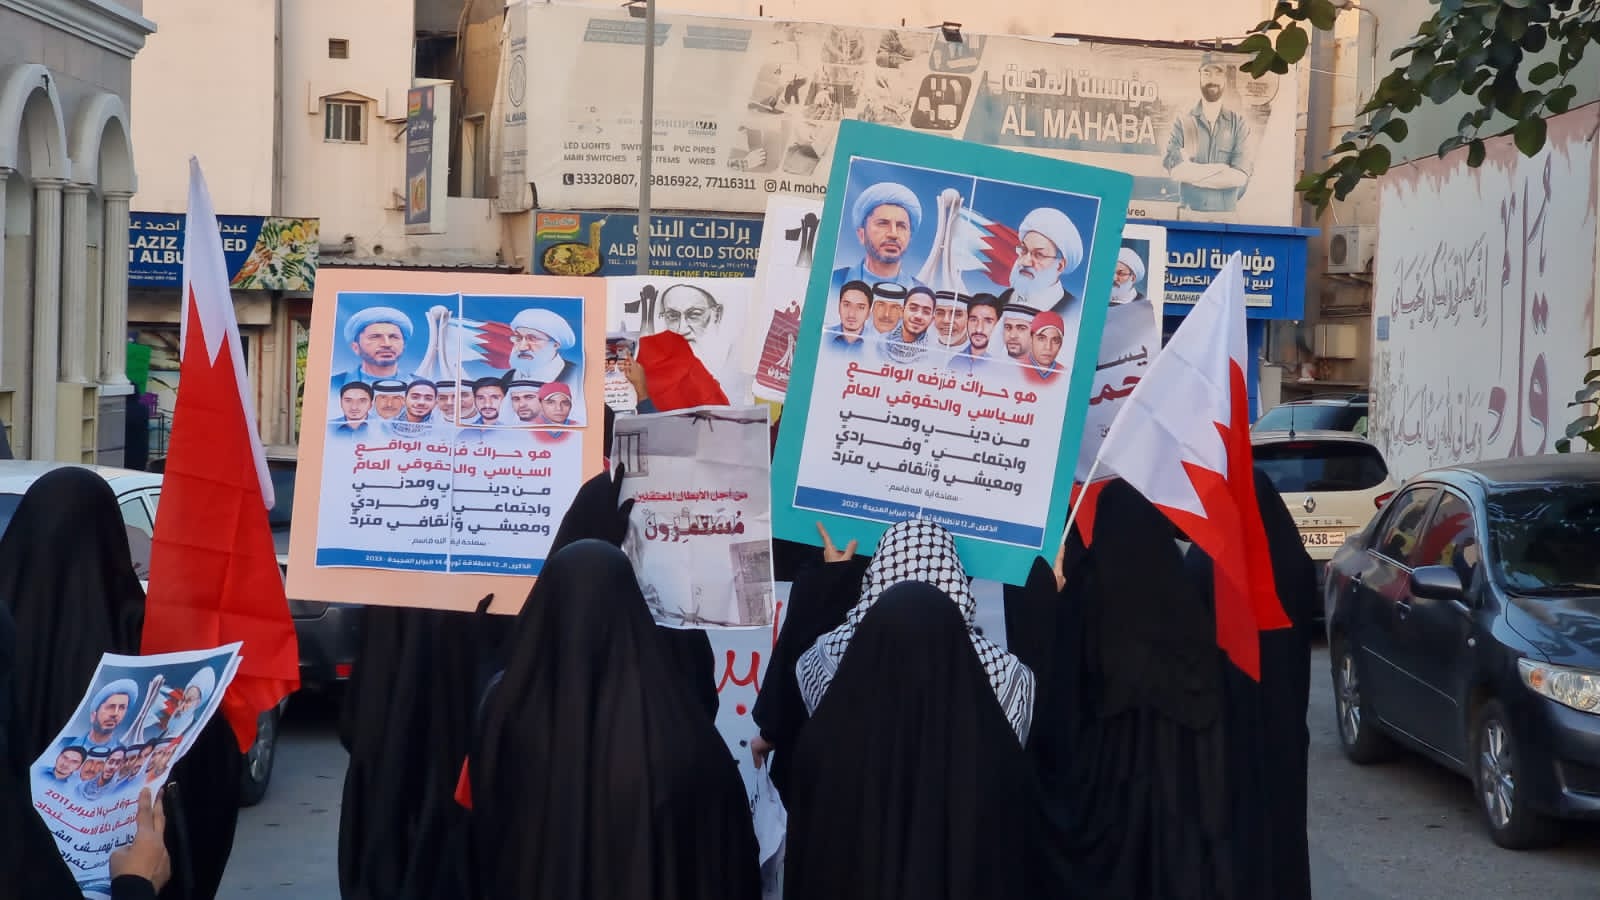 عريضة تضامن مع شعب البحرين في مجلس العموم البريطاني 